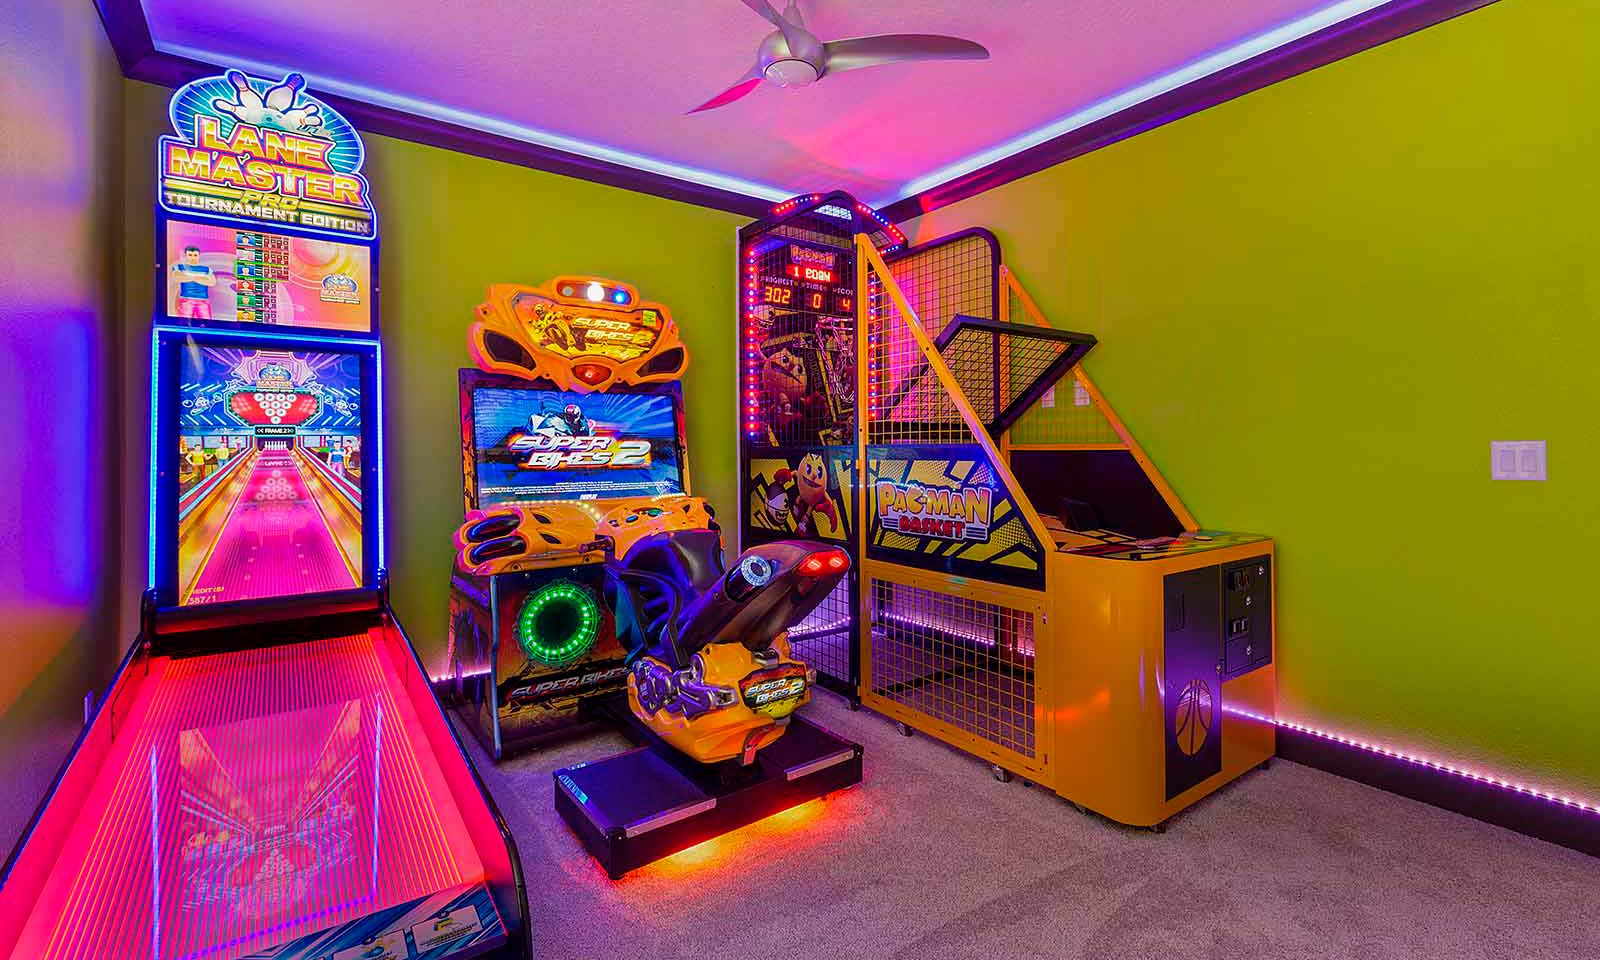 [amenities:Arcade-Games:3] Arcade Games